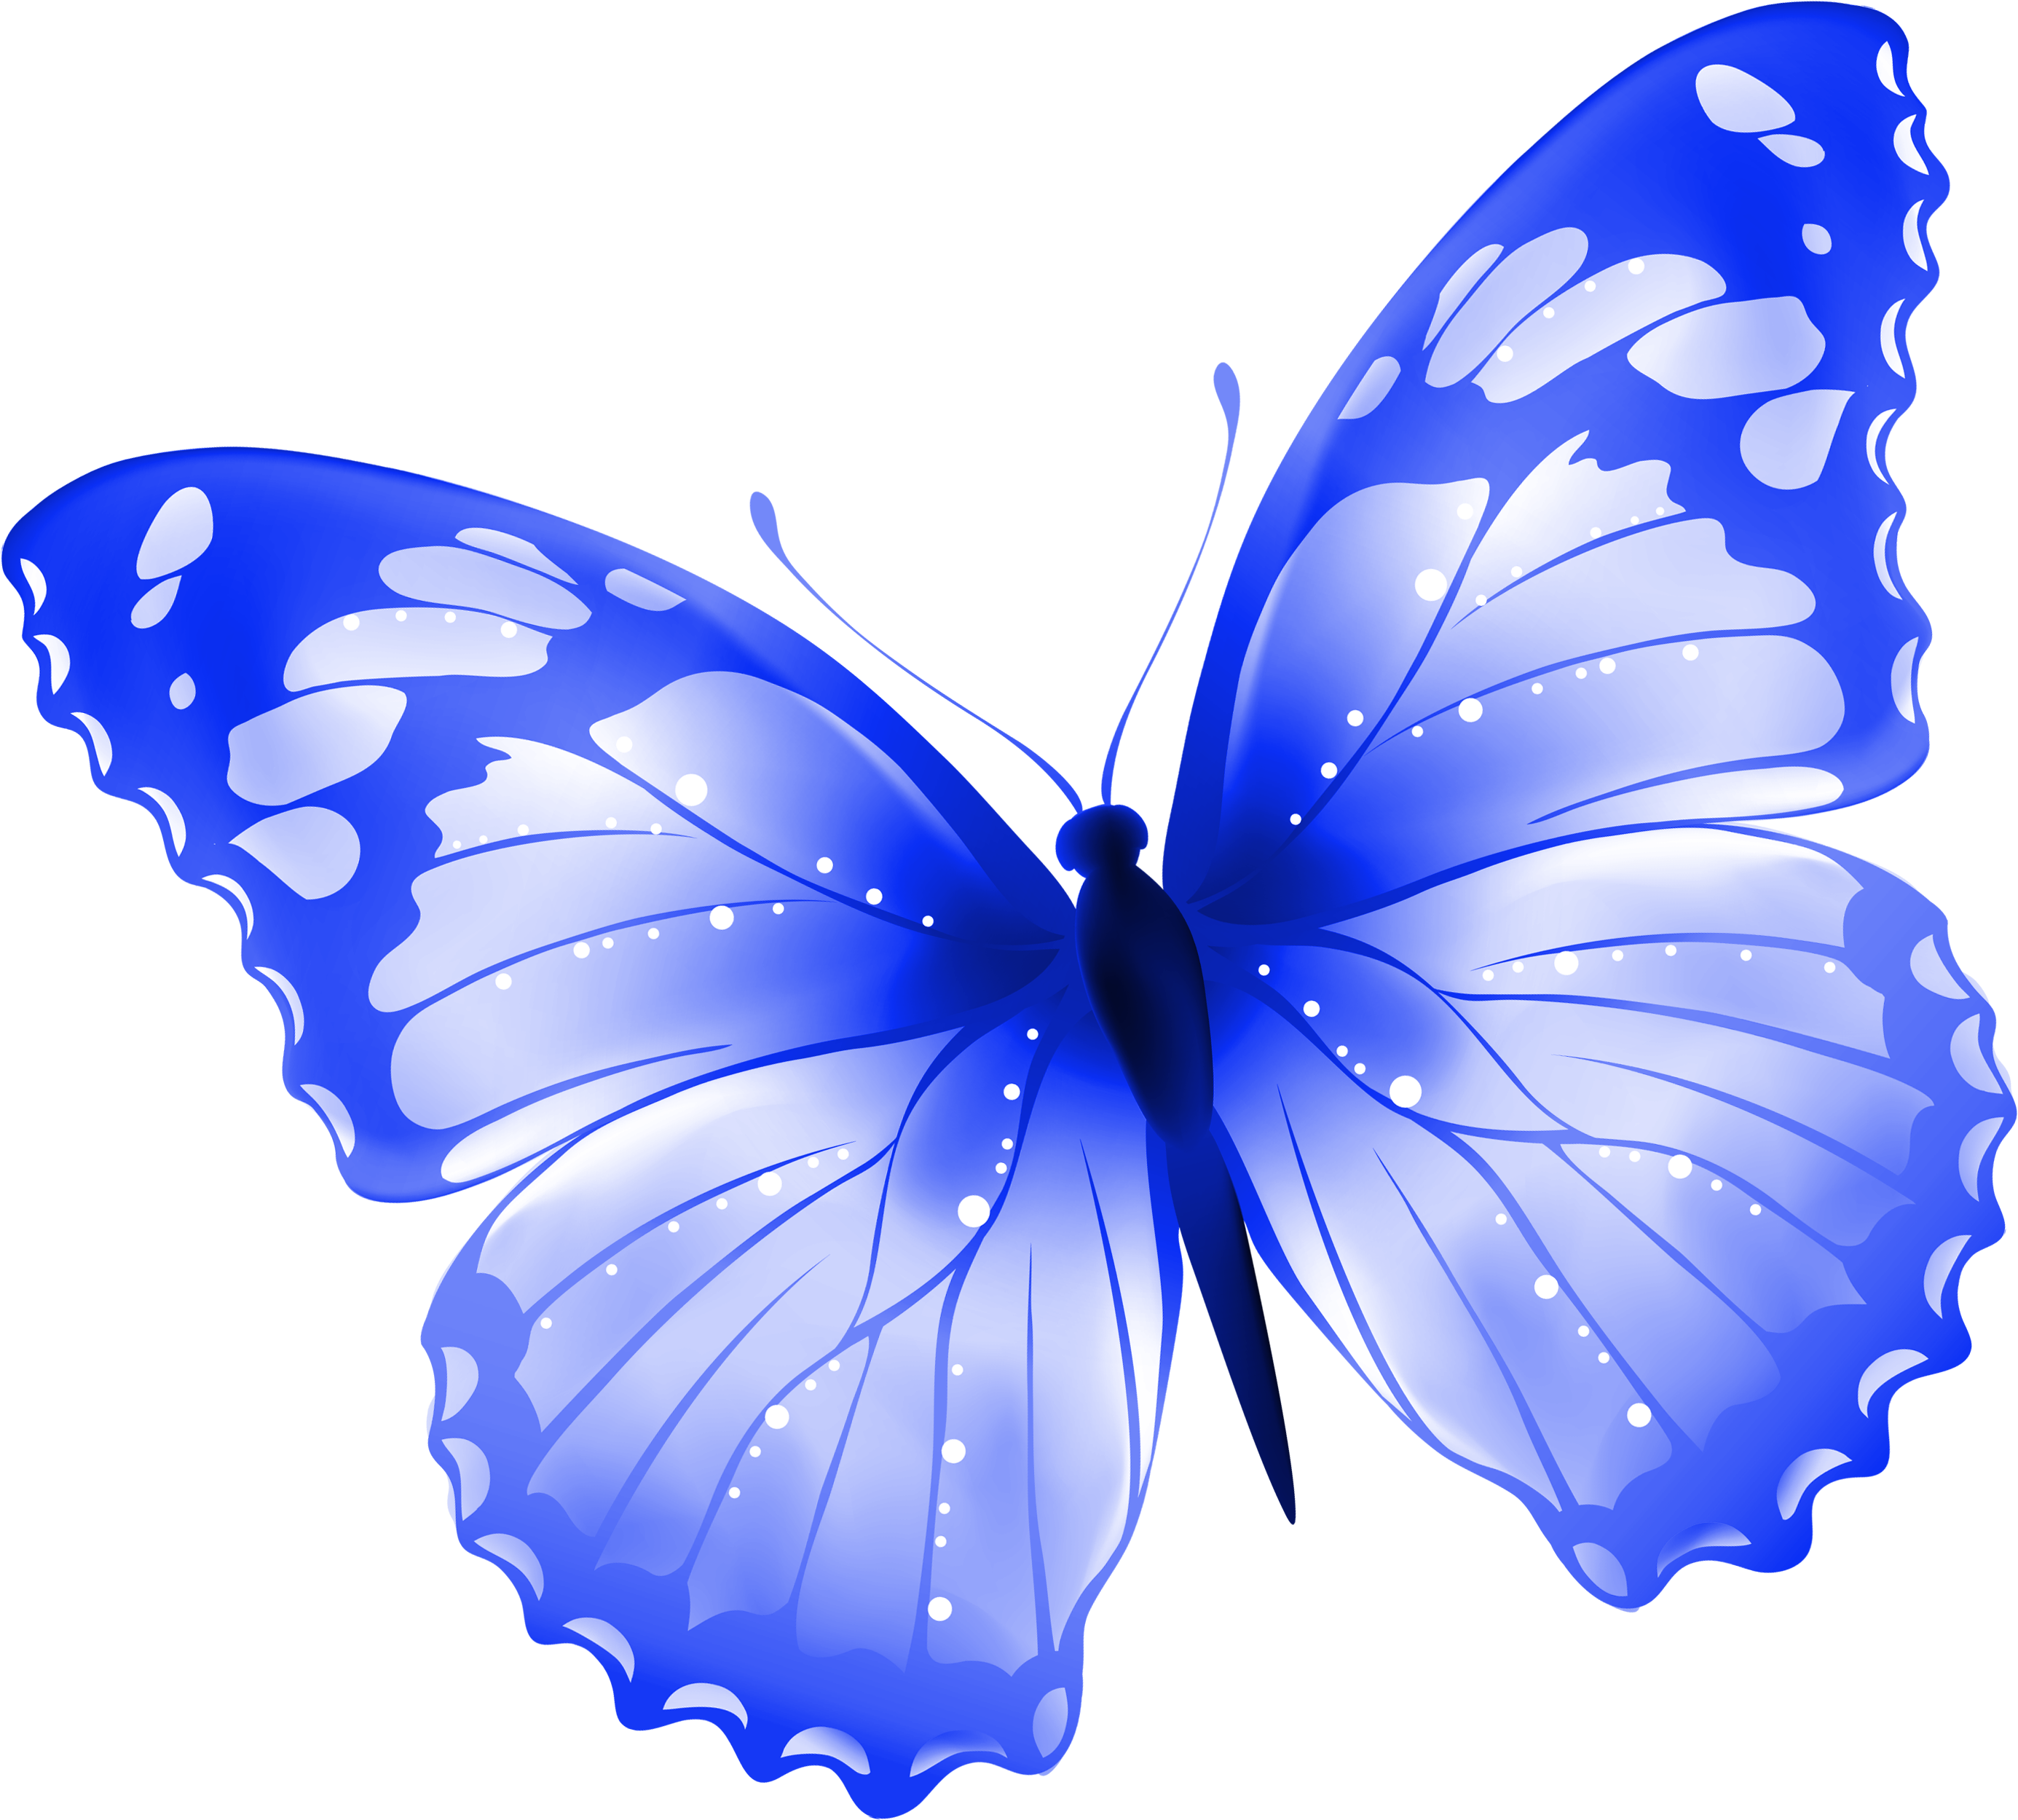 Картинки на прозрачном фоне разное. Бабочки на белом фоне. Картинка бабочка на прозрачном фоне. Бабочки на просроченном фоне. Синие бабочки на прозрачном фоне.